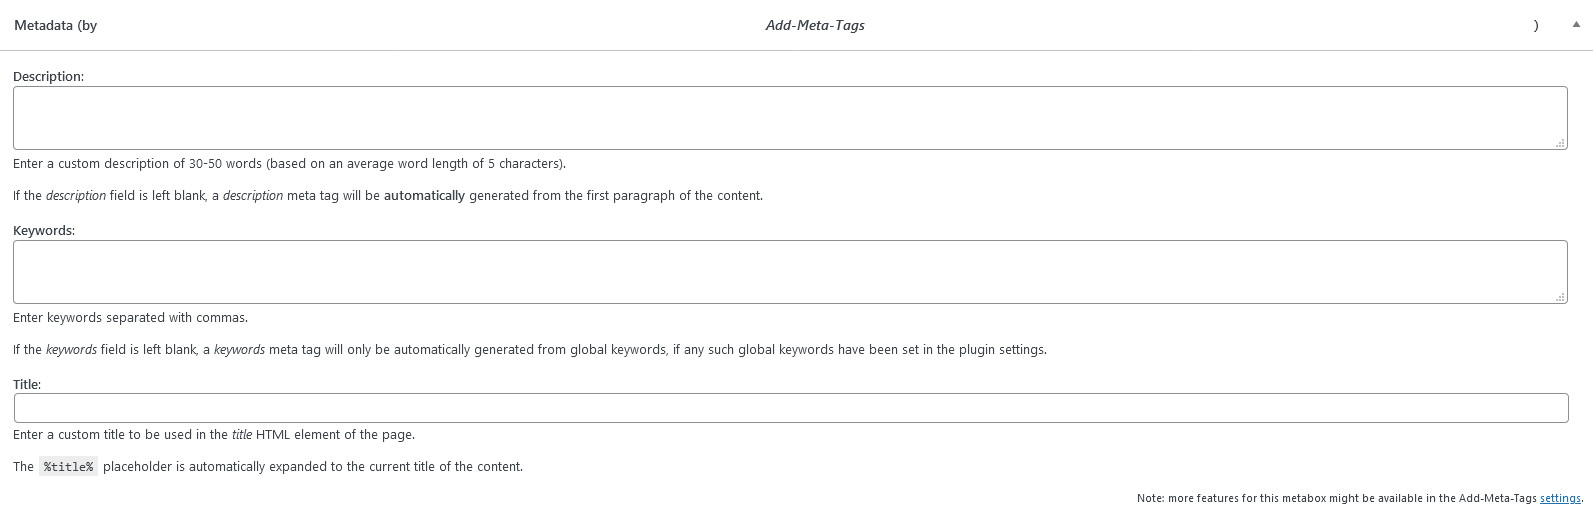 Exemple d'édition de description sur Wordpress avec Add Meta Tags